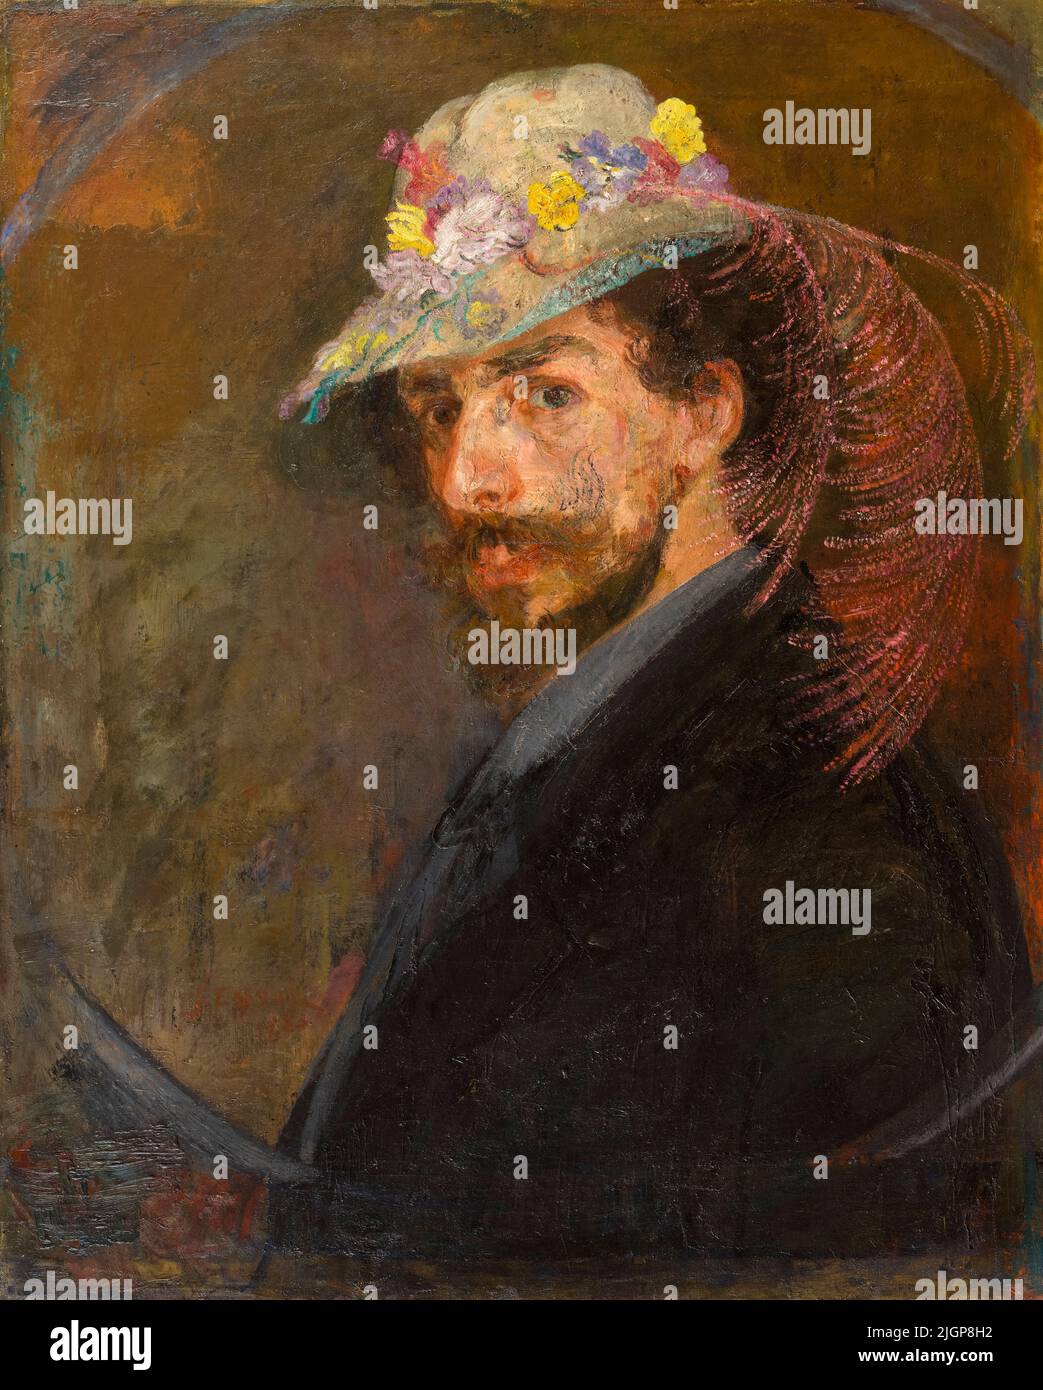 Autoportrait avec chapeau fleuri, peinture du peintre belge James Ensor, (1860-1949), huile sur toile, 1883-1888 Banque D'Images